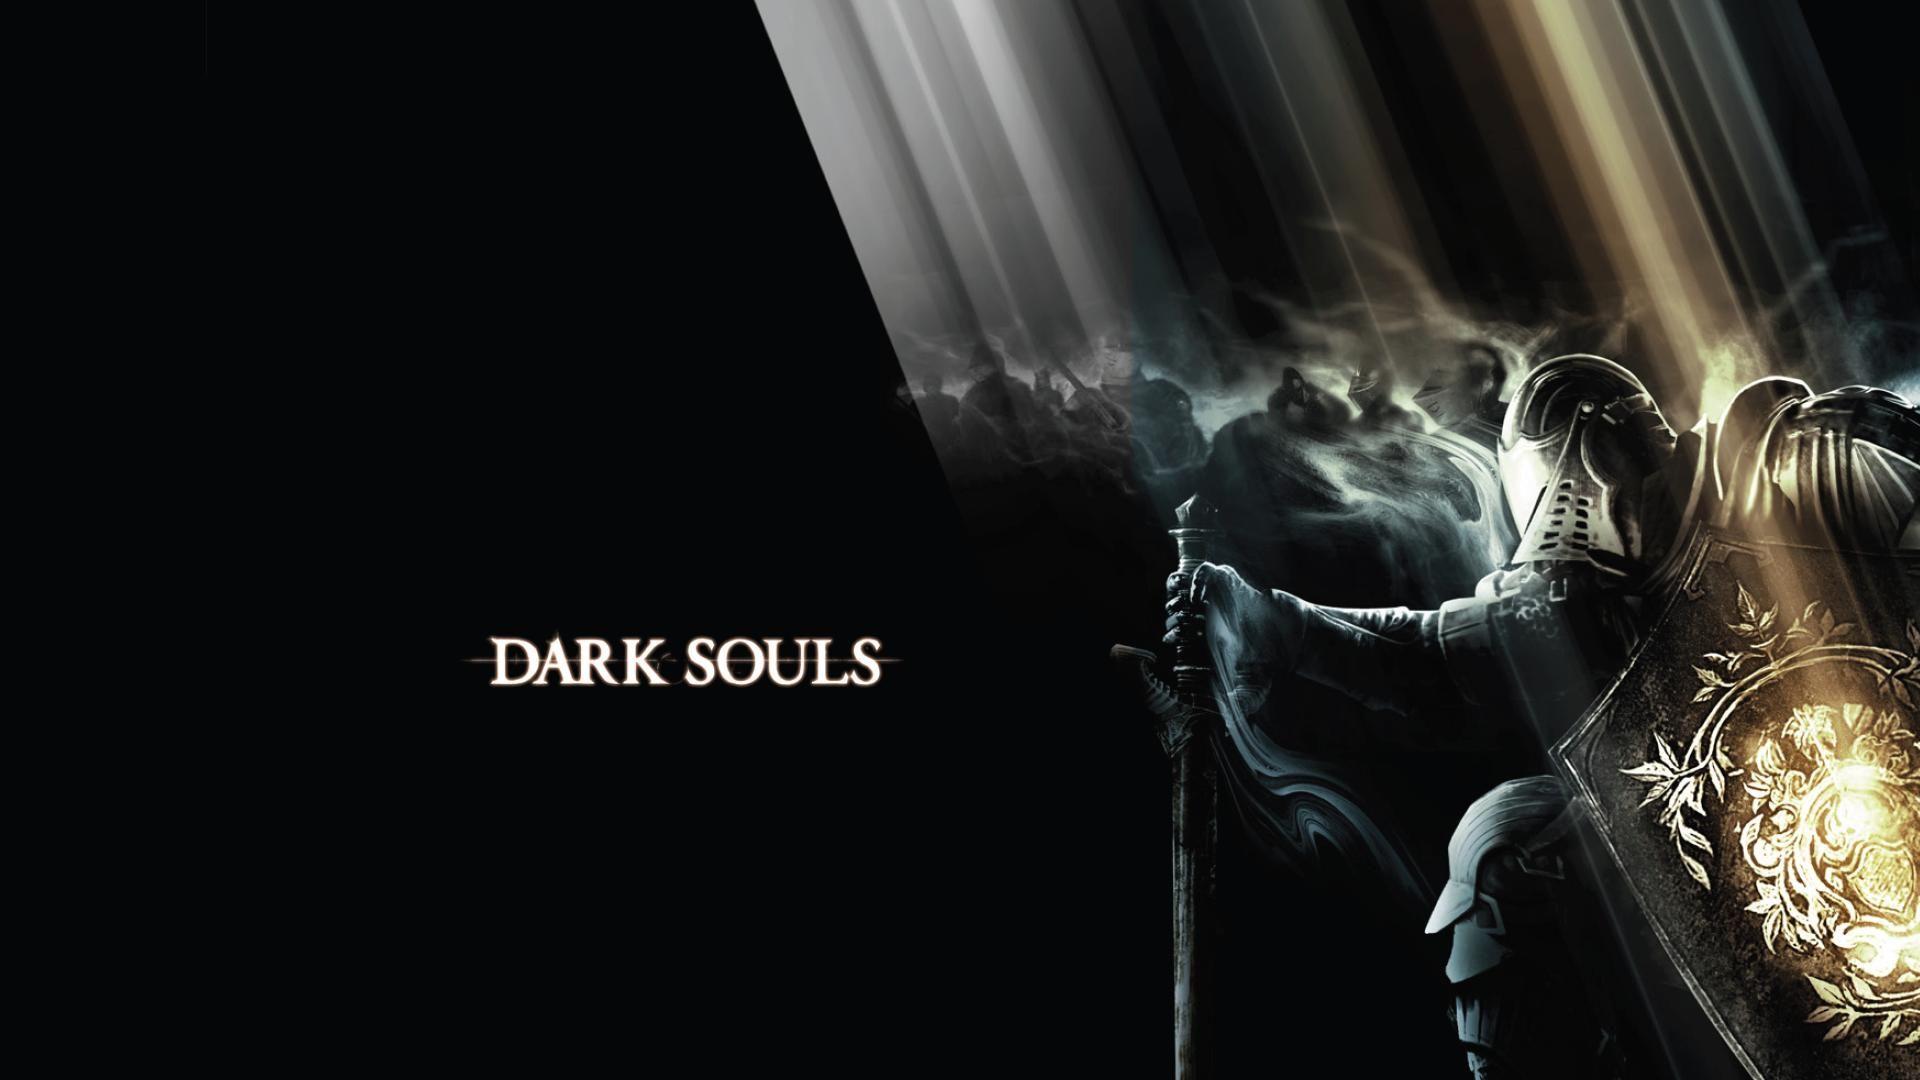 Dark Souls Wallpaper, 33 Dark Souls Image and Wallpaper for Mac